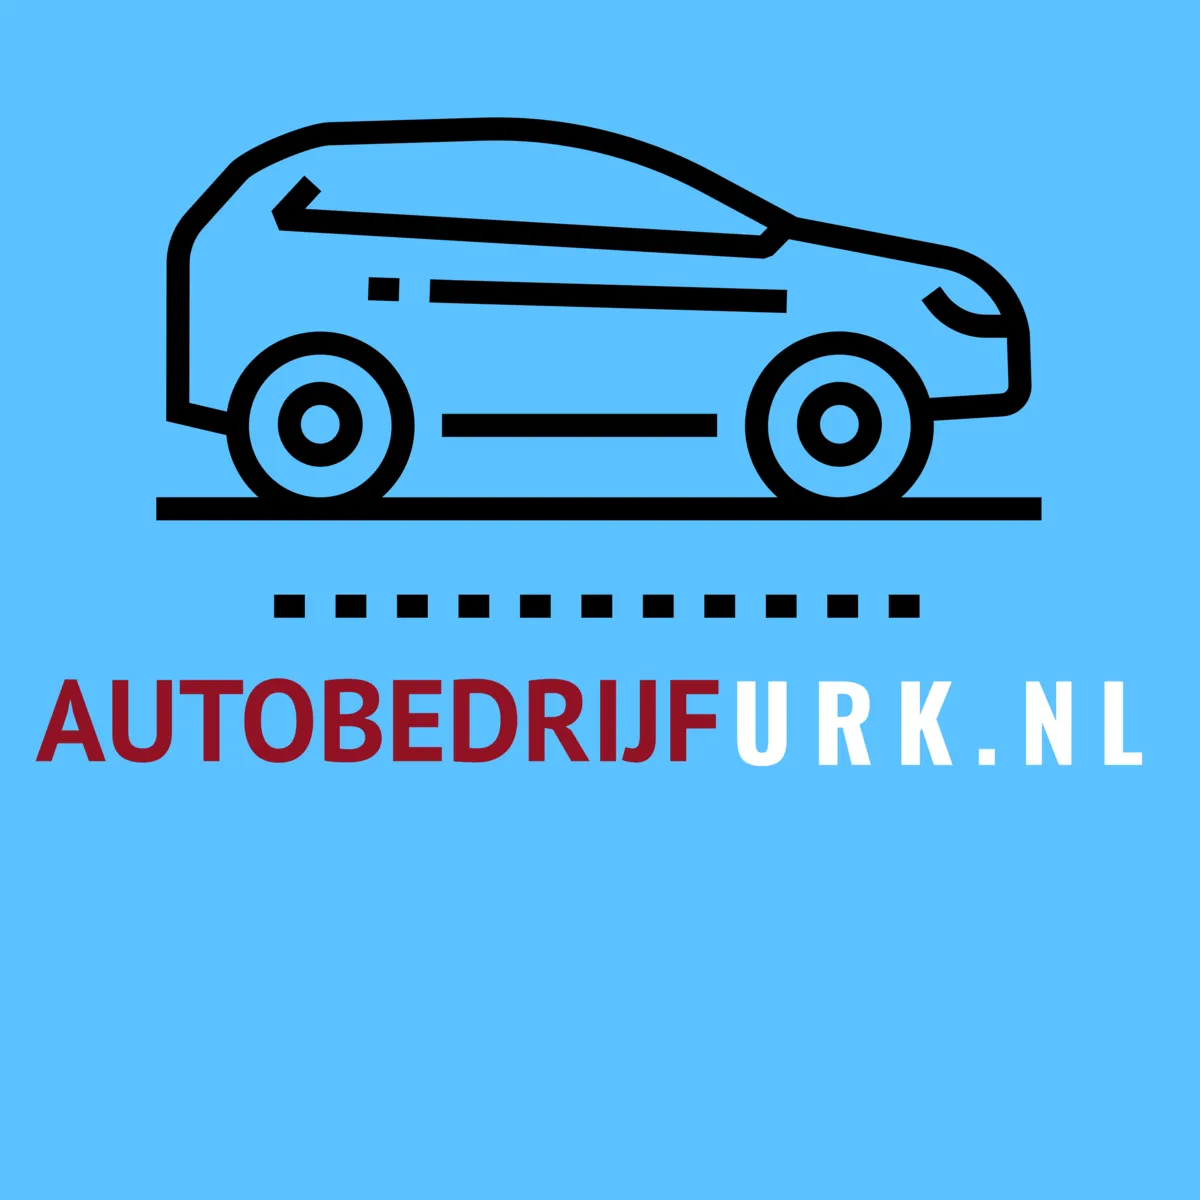 AutobedrijfUrk.nl -optie A